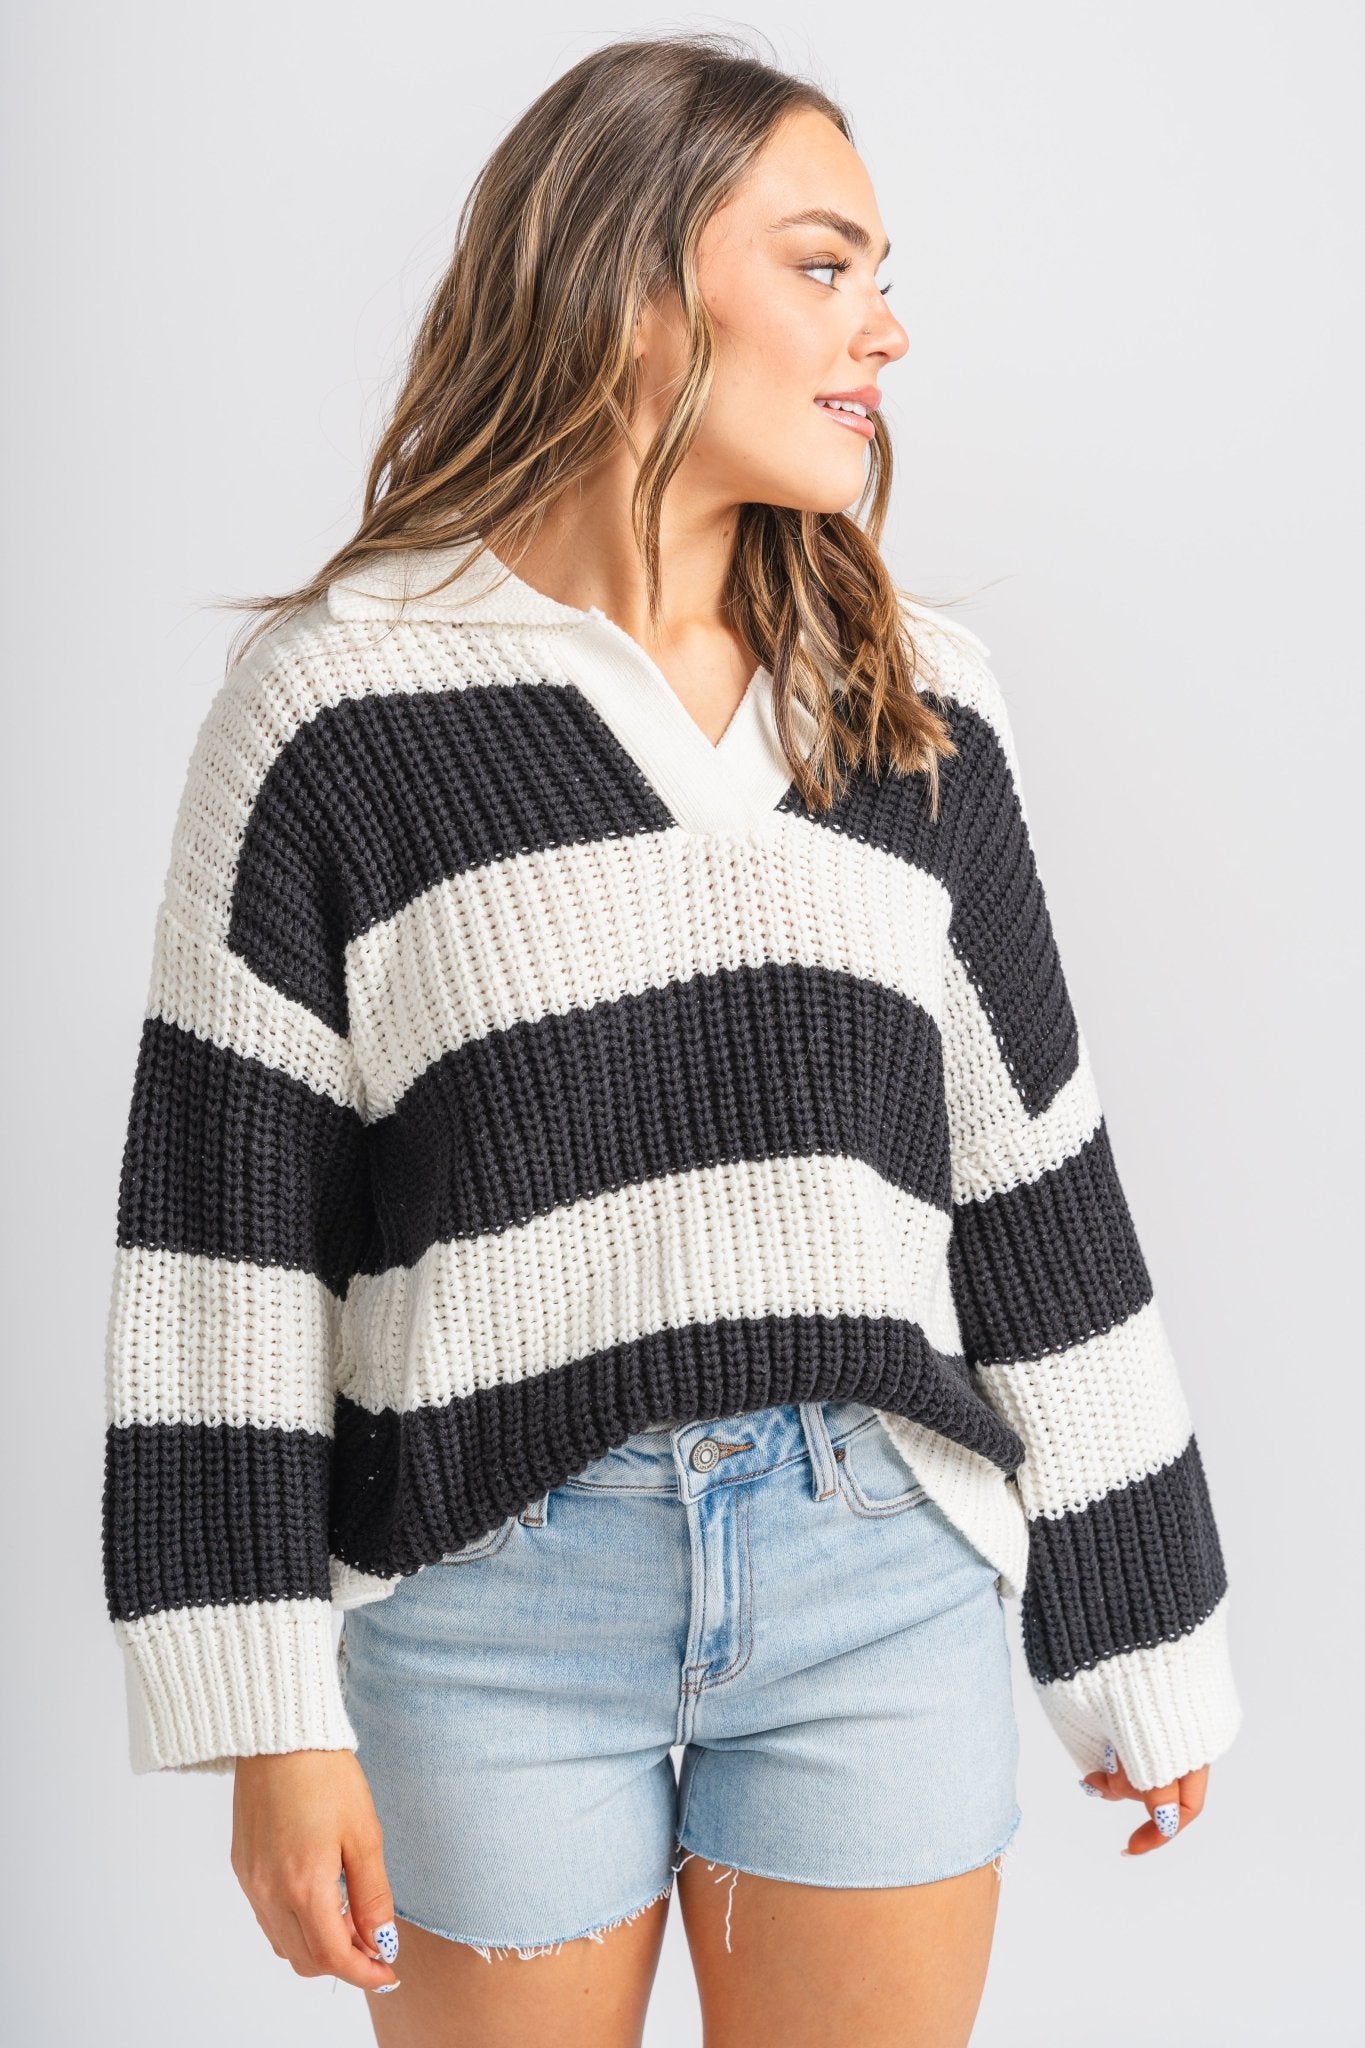 Cute & Trendy Sweaters | Fashion Sweaters & Stylish Sweaters - Lush ...